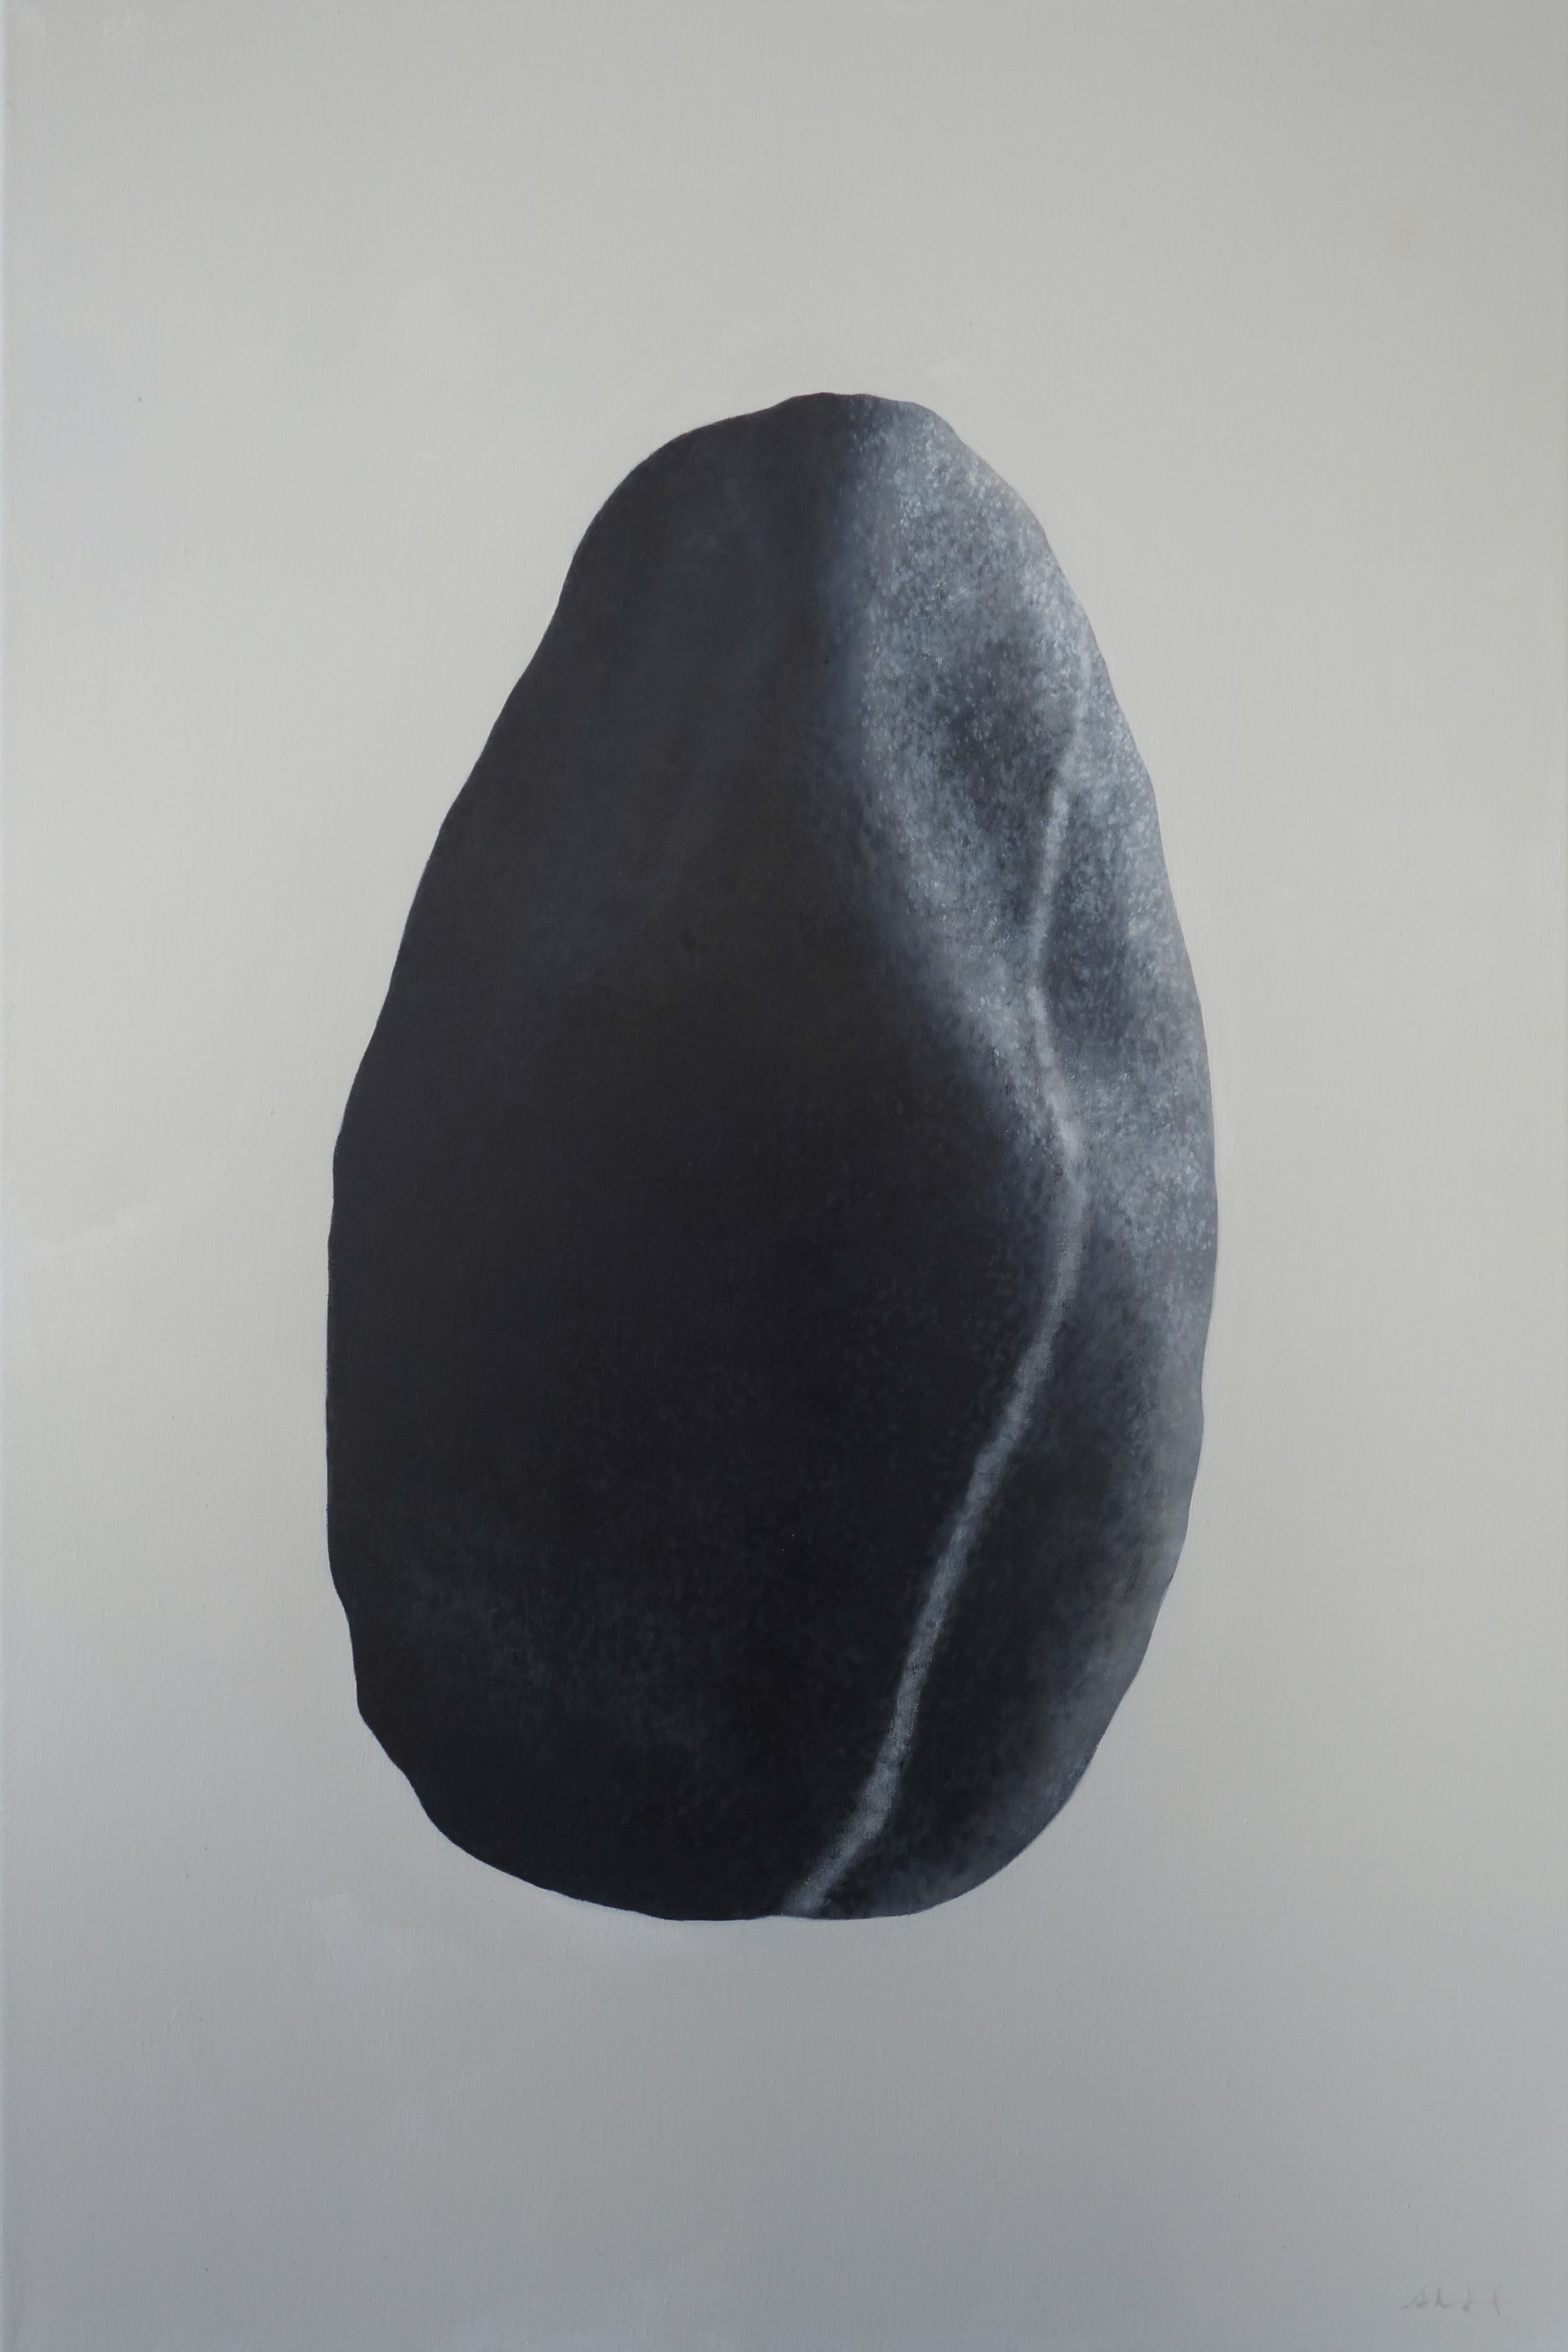 Indented Stone by Sarah Verardo